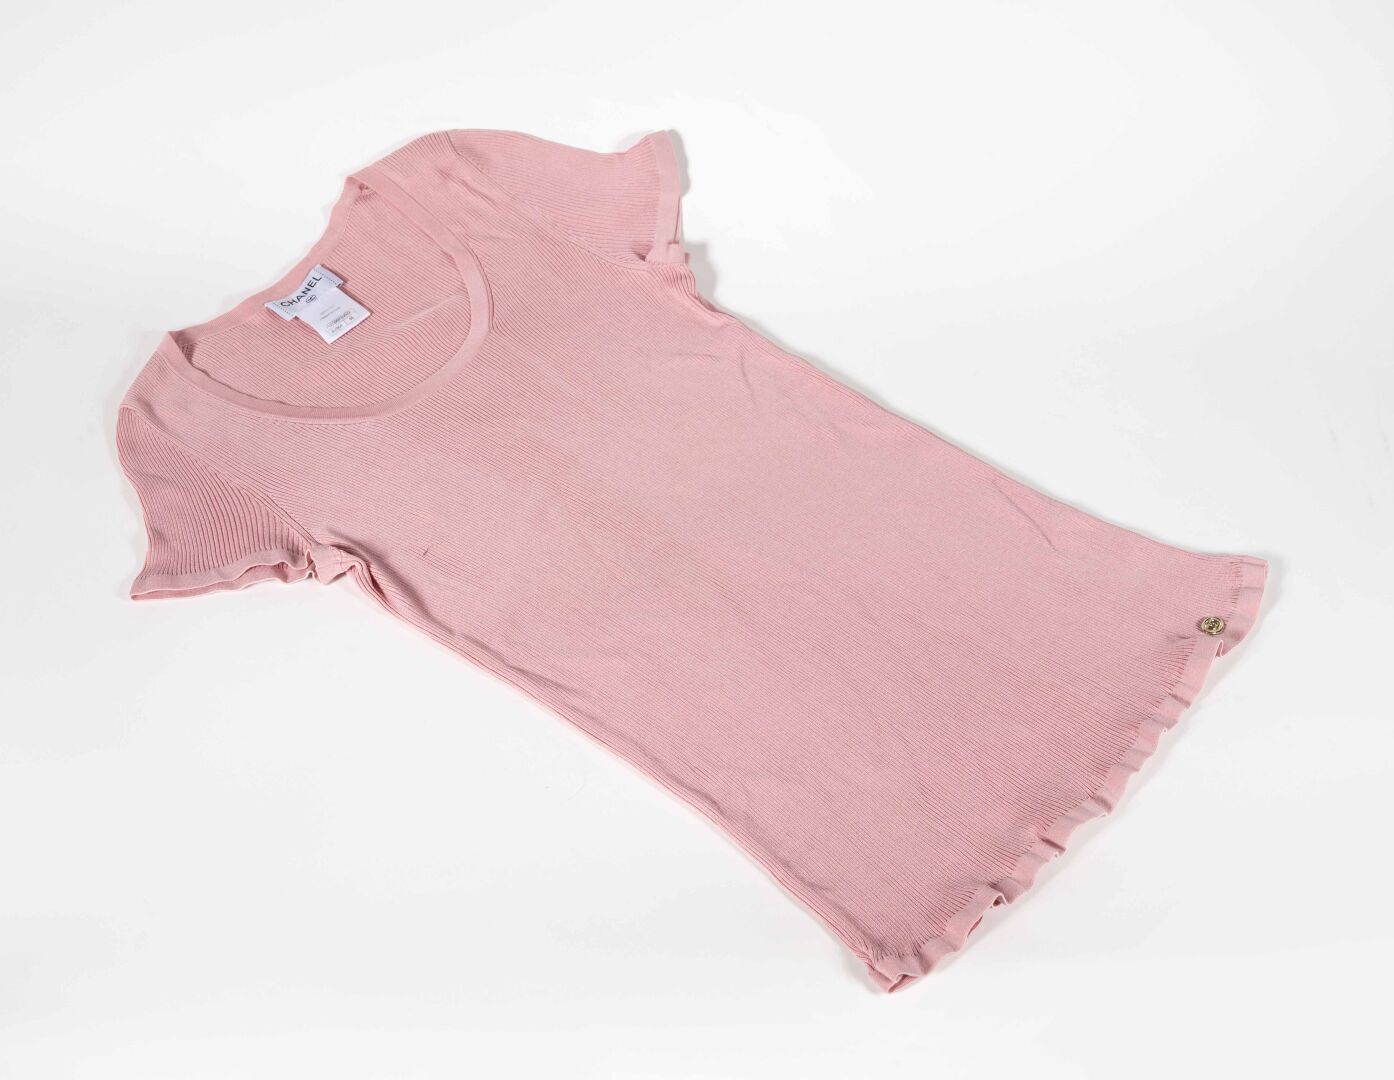 CHANEL T-shirt rosa in cotone e poliestere, taglia 46

Buono stato, piccola macc&hellip;